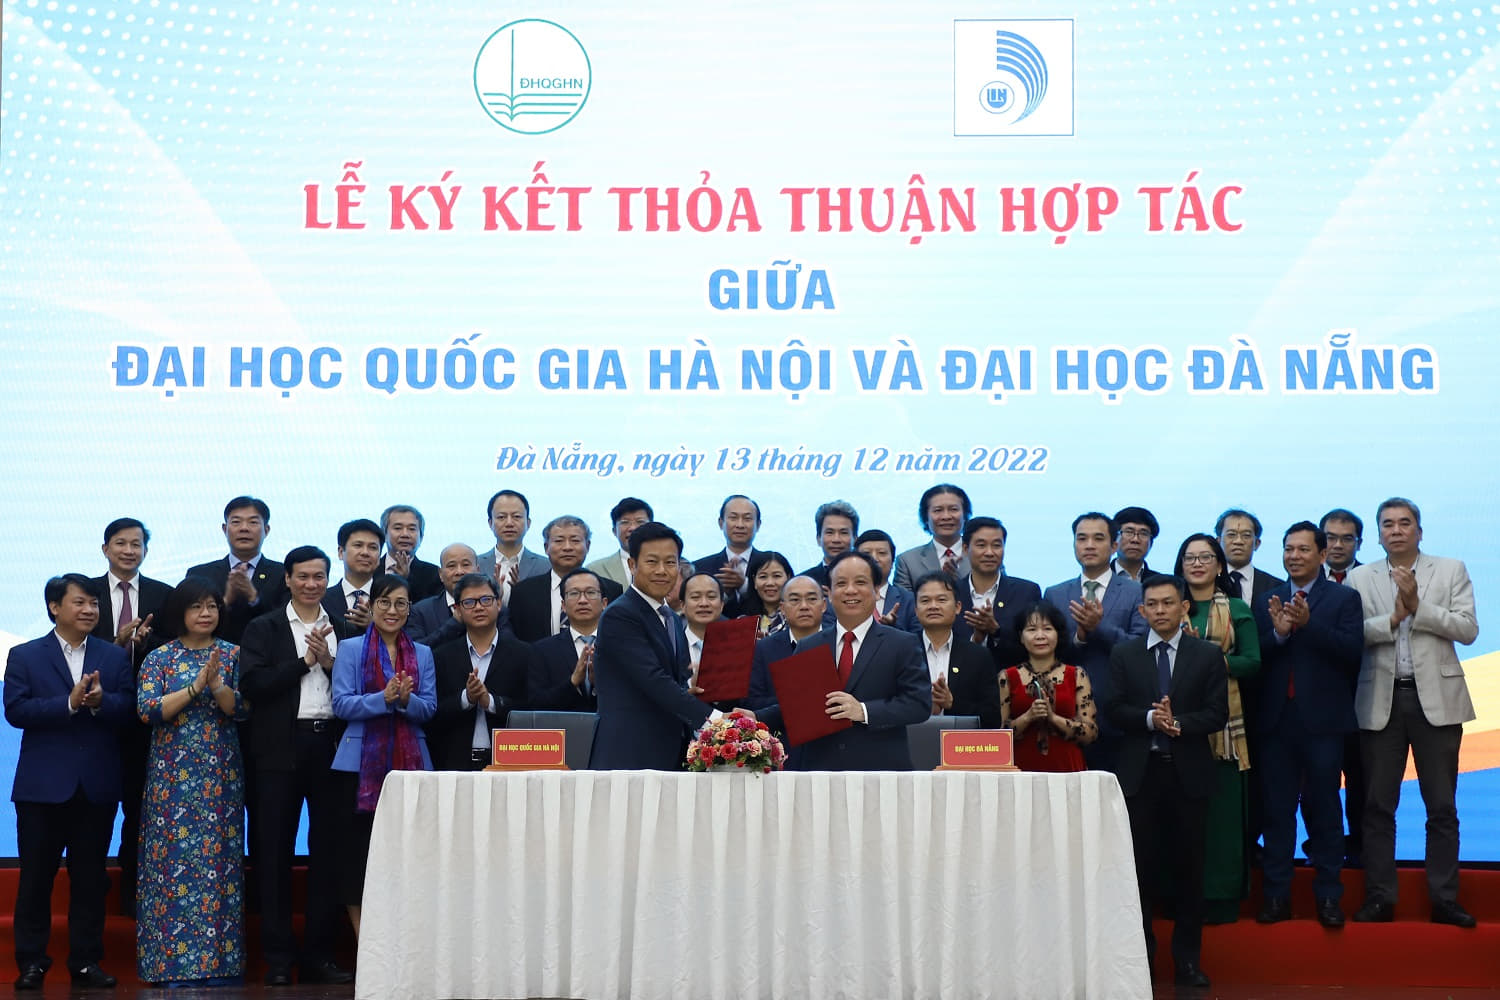 Ký kết Thỏa thuận hợp tác với ĐHQG Hà Nội